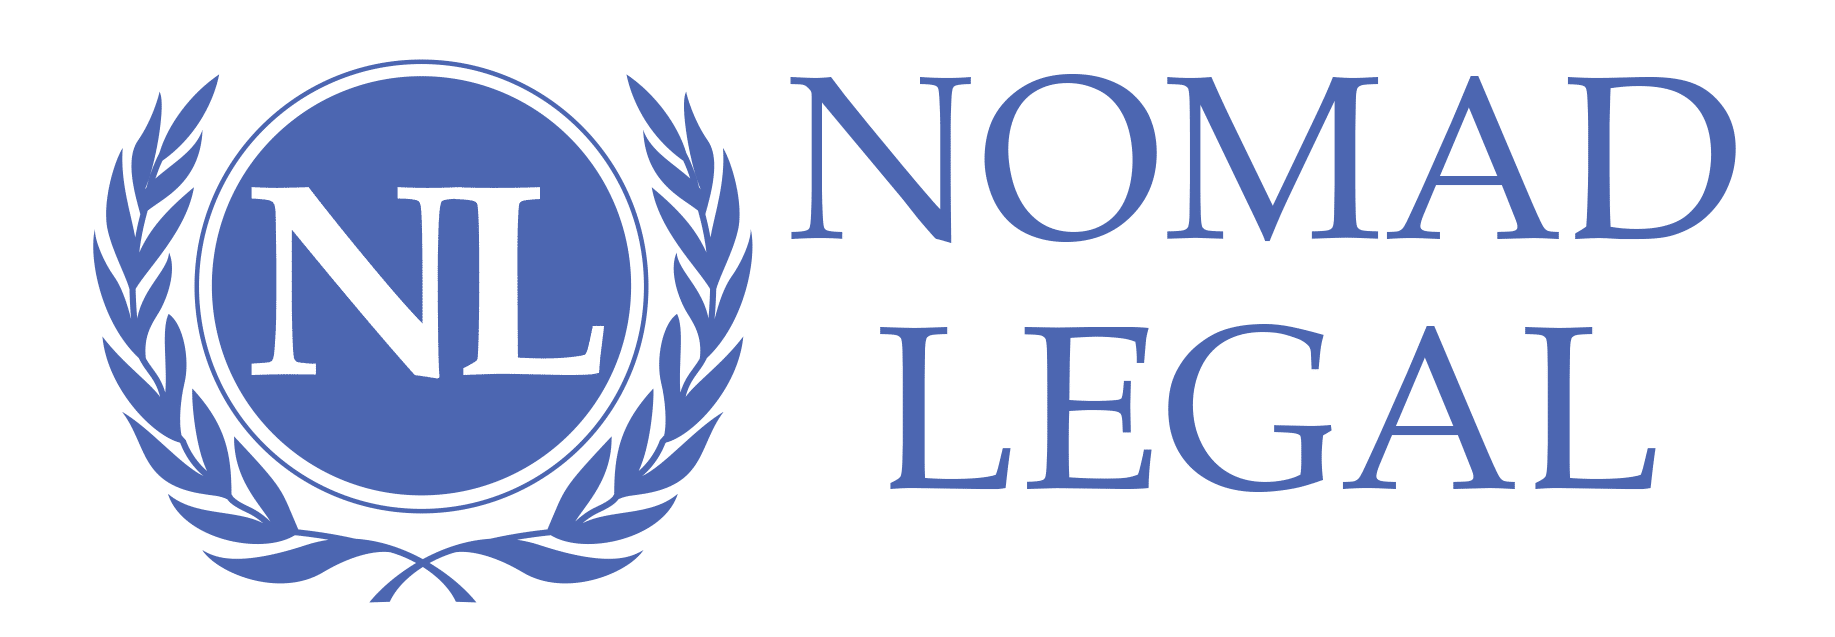 Nomad Legal